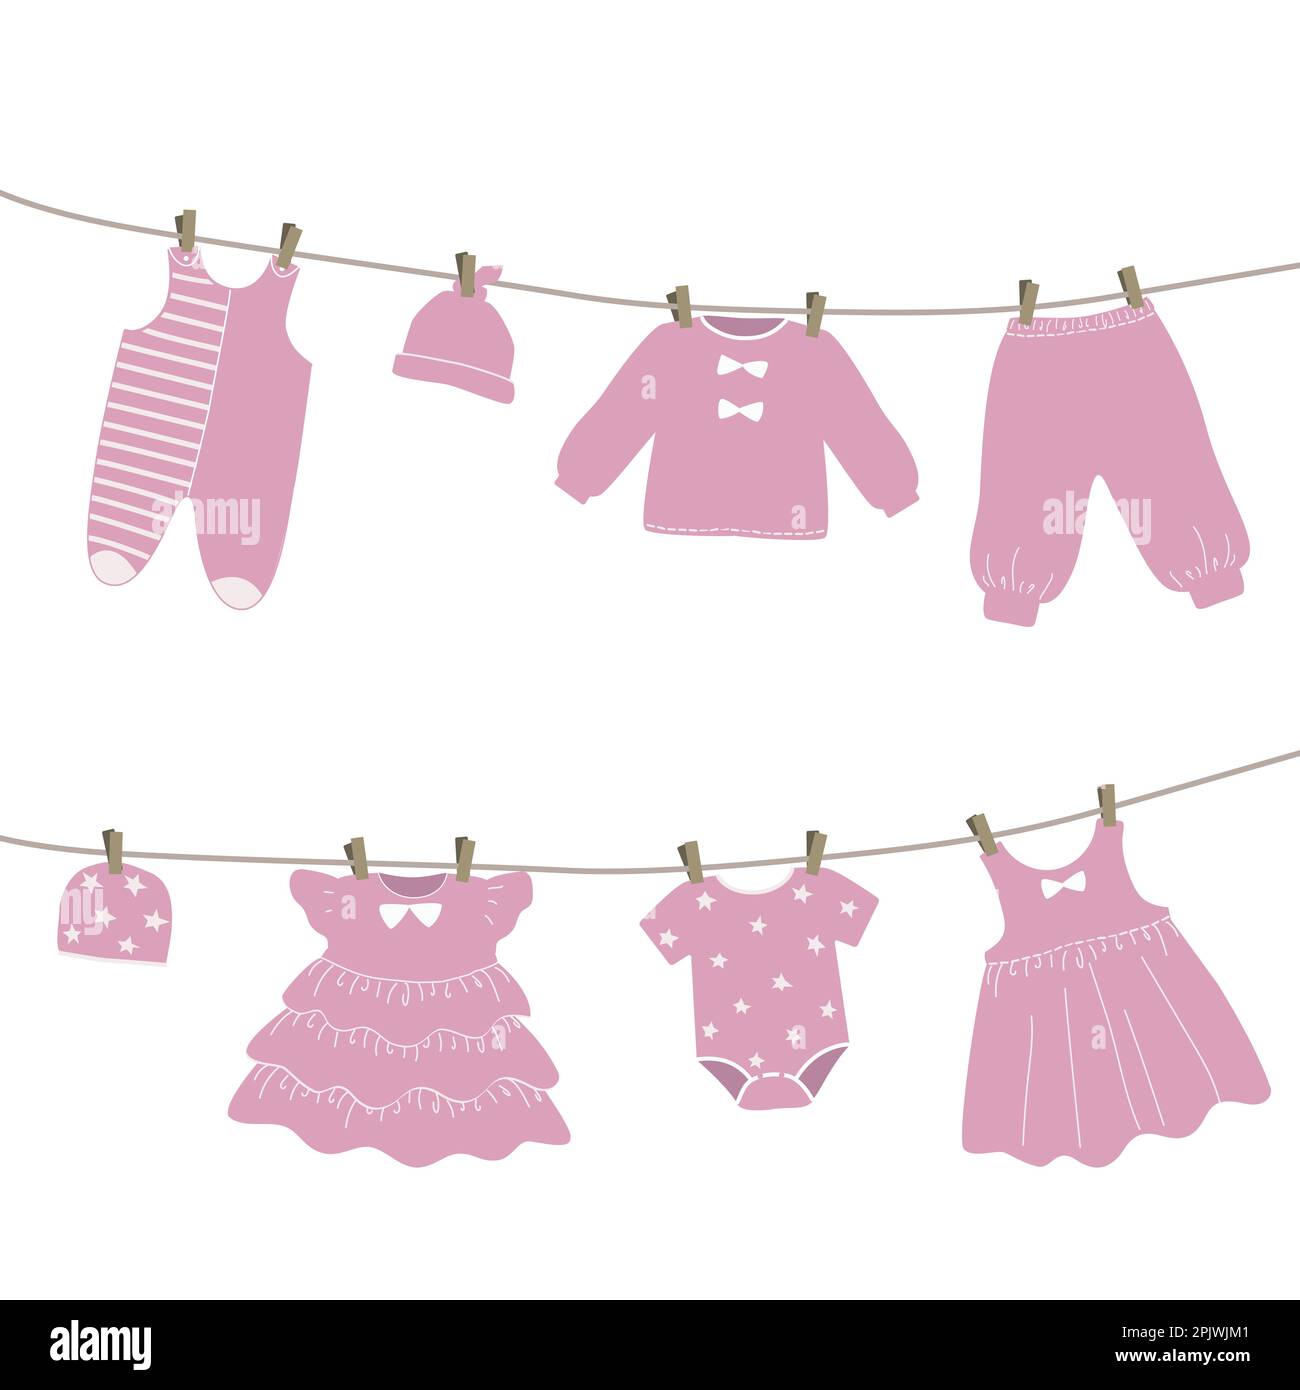 Babykleidung hängt an der Wäscheleine. Nach dem Waschen werden die Sachen auf den Wäscheklammern getrocknet. Vektorgrafik in rosa Farben Stock Vektor